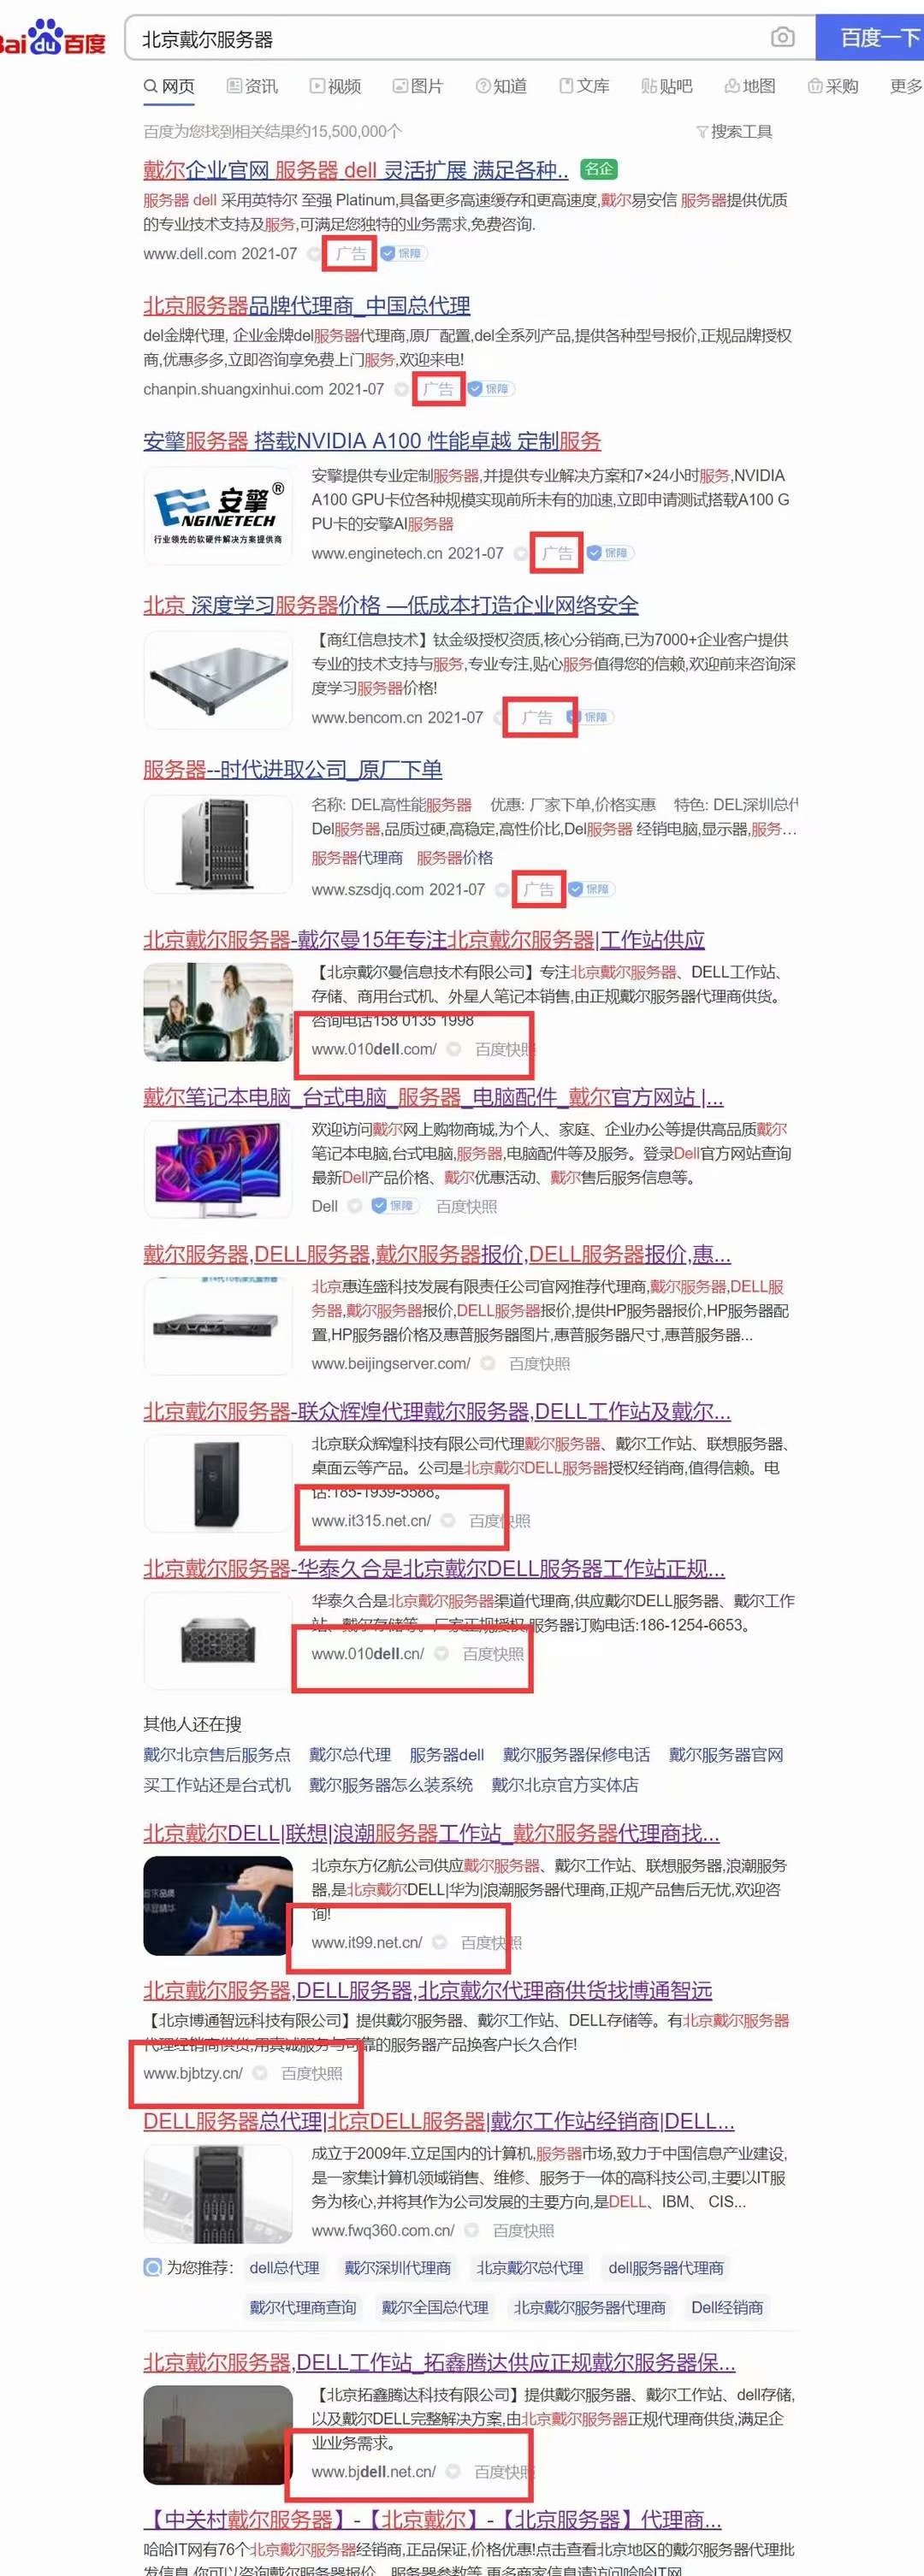 鞍山北京戴尔服务器超大词使用富海站群系统6个独立站霸屏首页